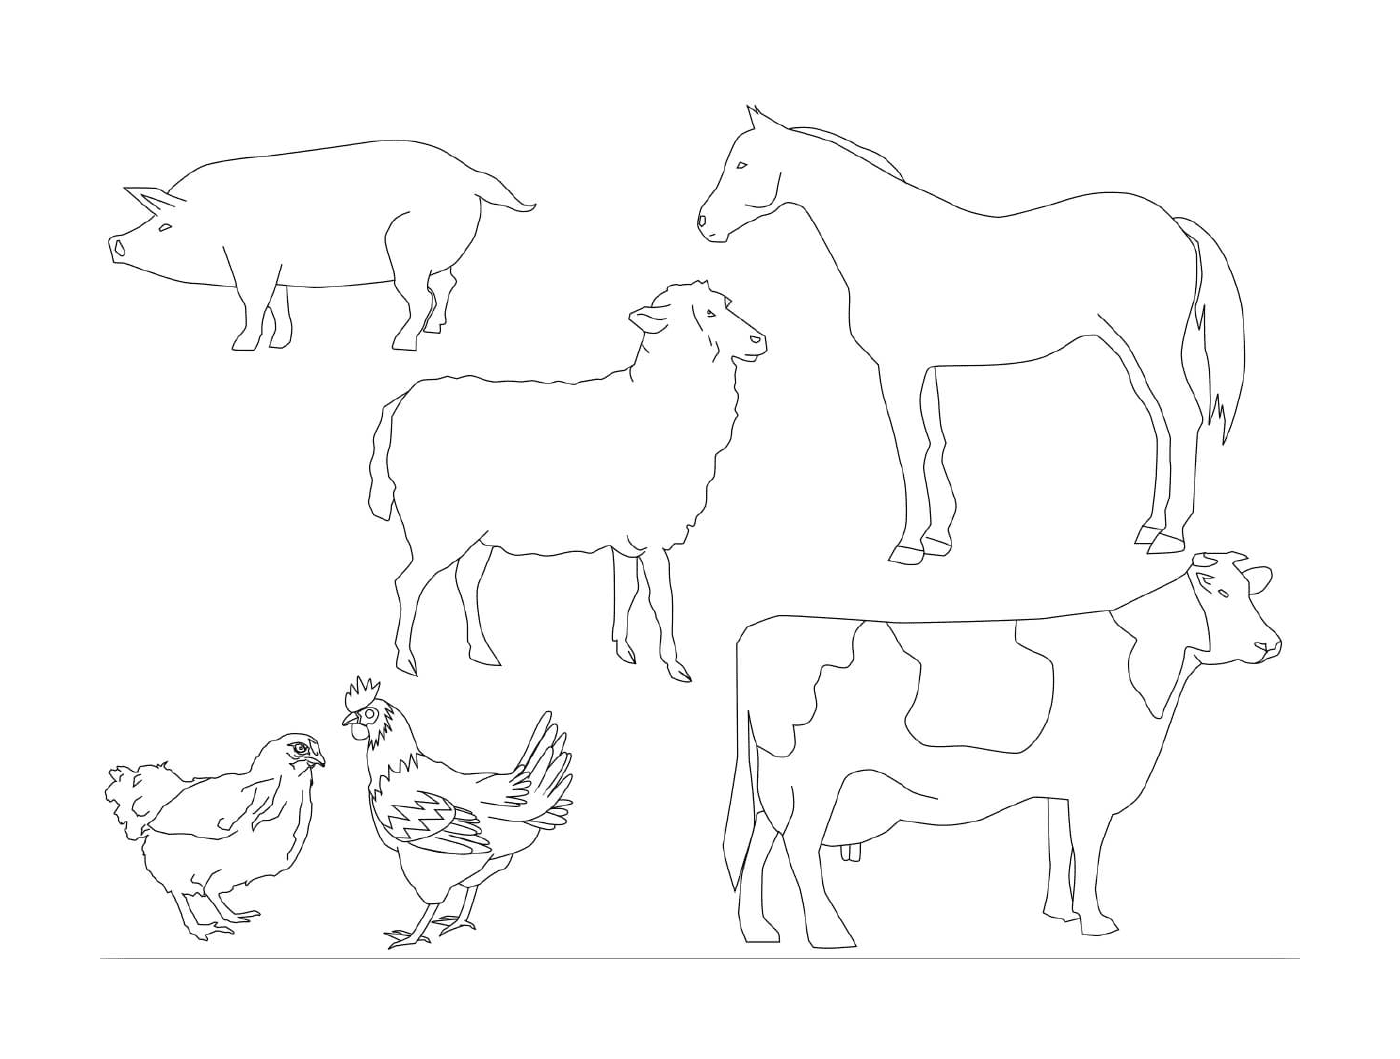  Muitos animais que podem ser desenhados 